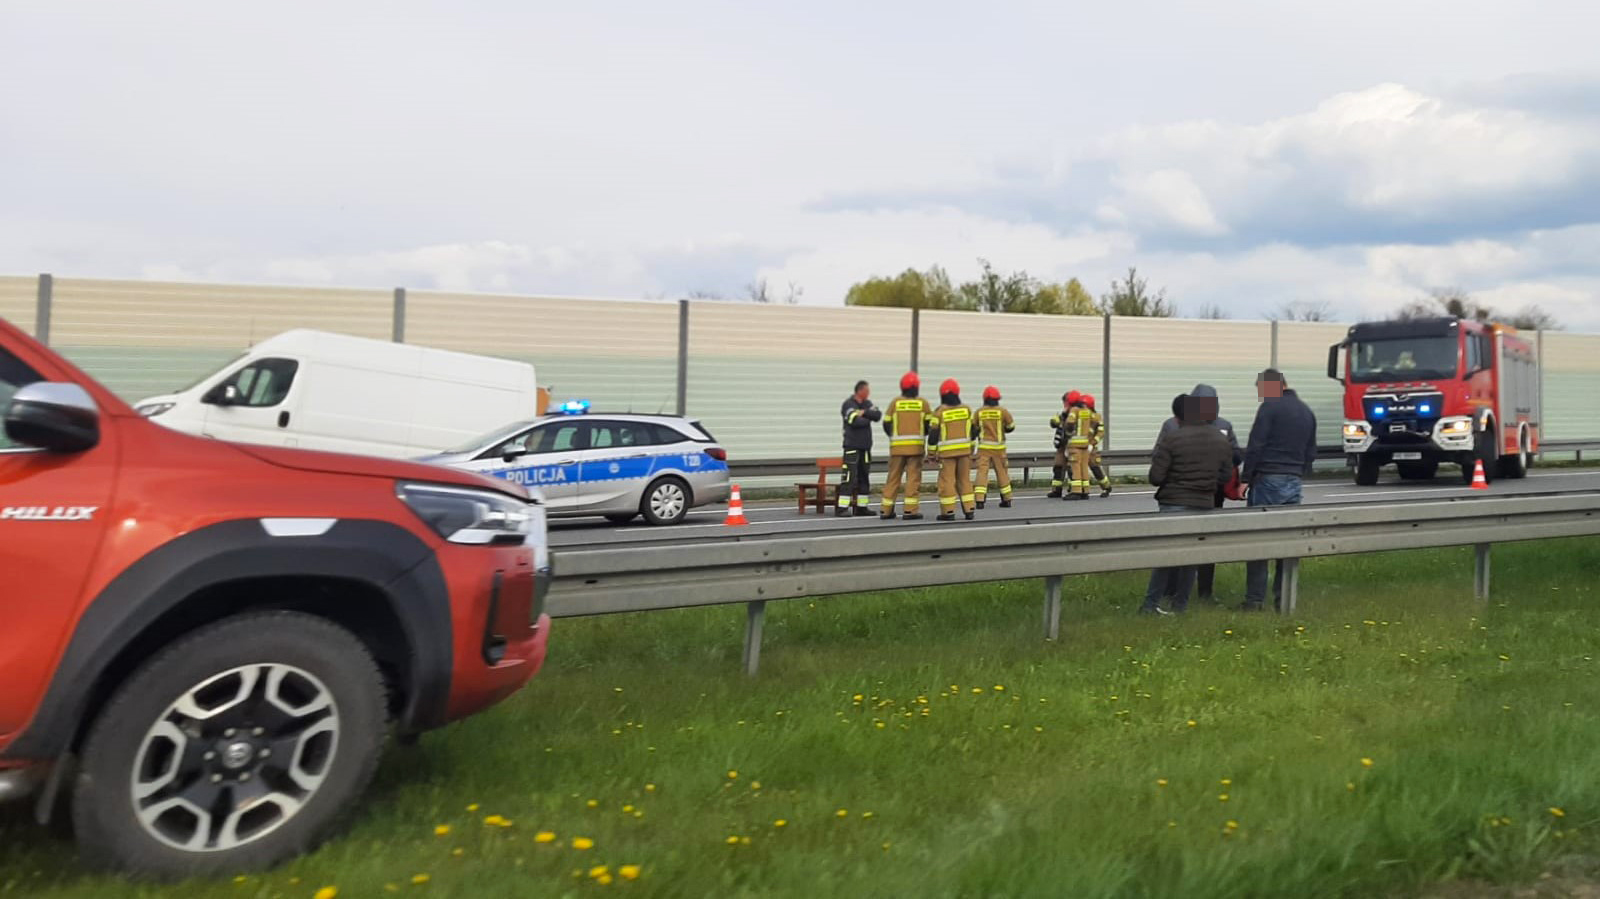 Śmiertelny wypadek na trasie S7. Ciężarówka potrąciła operatora lawety, który mocował zepsute auto na lawecie!